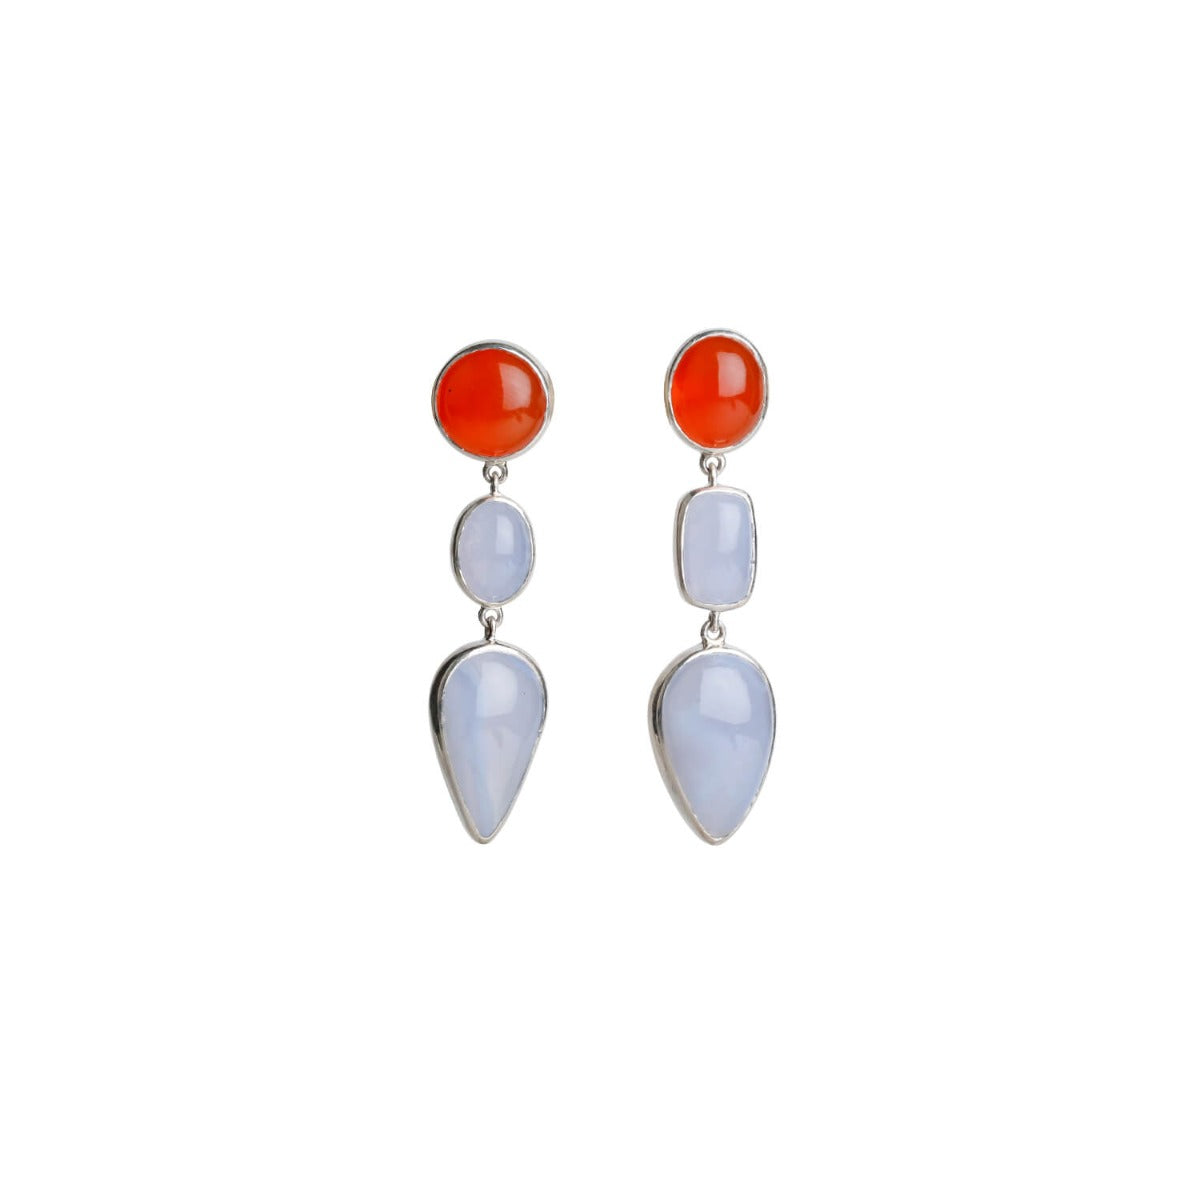 silver earrings, sterling silver earrings, carnelian earrings, chalcedony earrings, carnelian & chalcedony earrings, orange earrings, blue earrings, orange & blue silver earrings